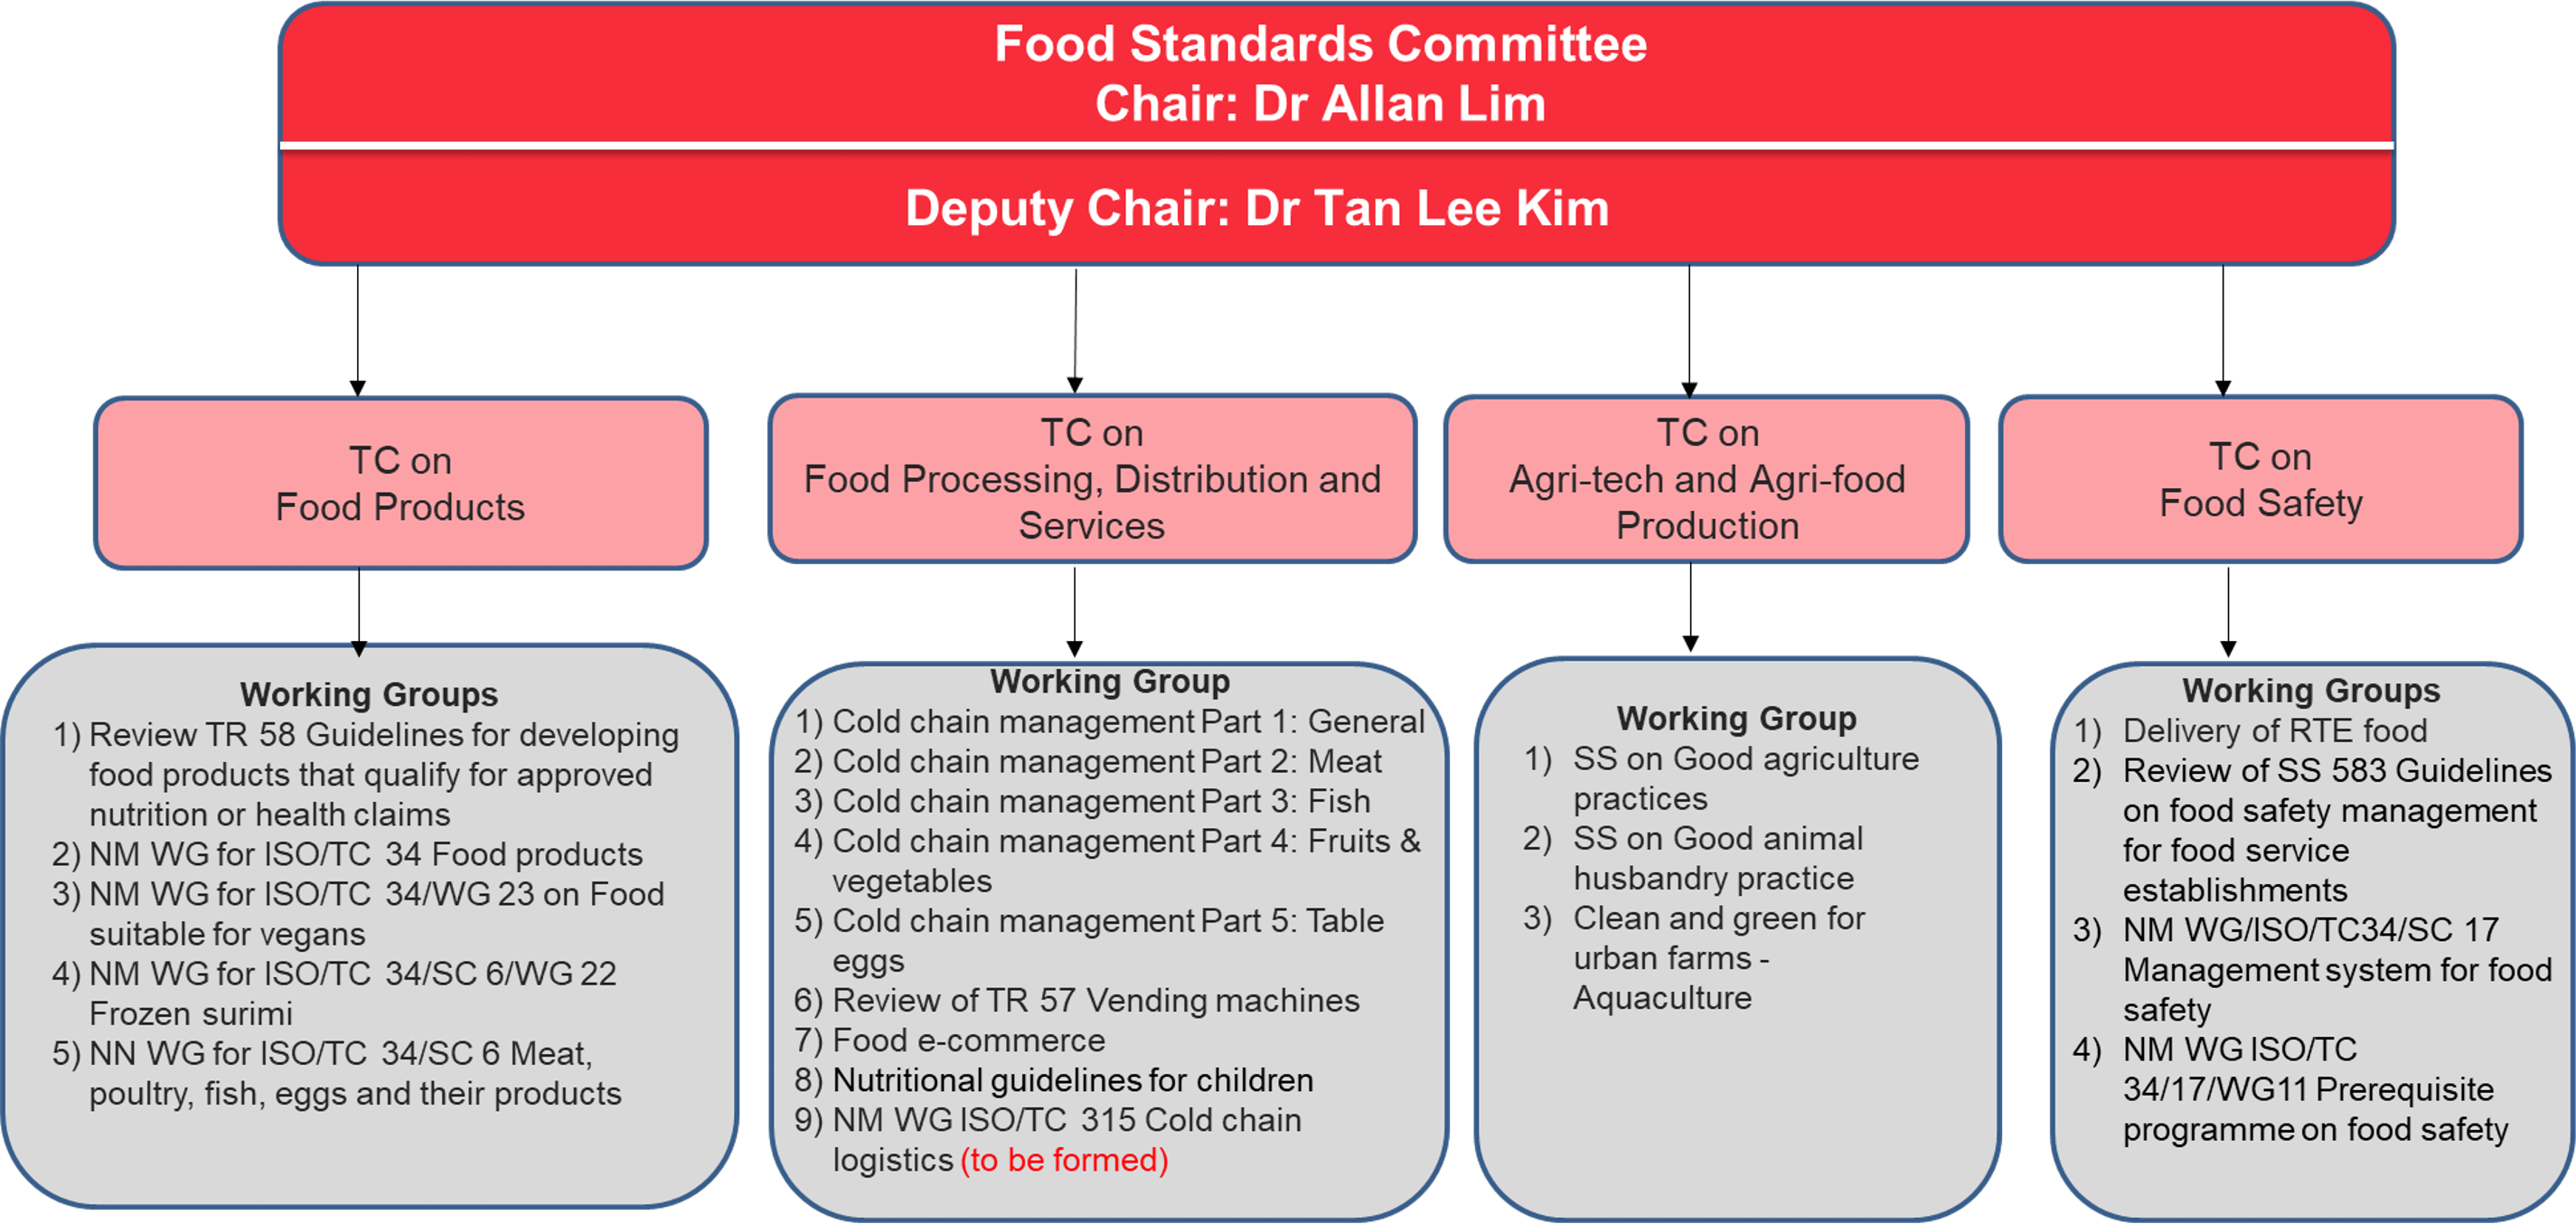 Food Standards Committee